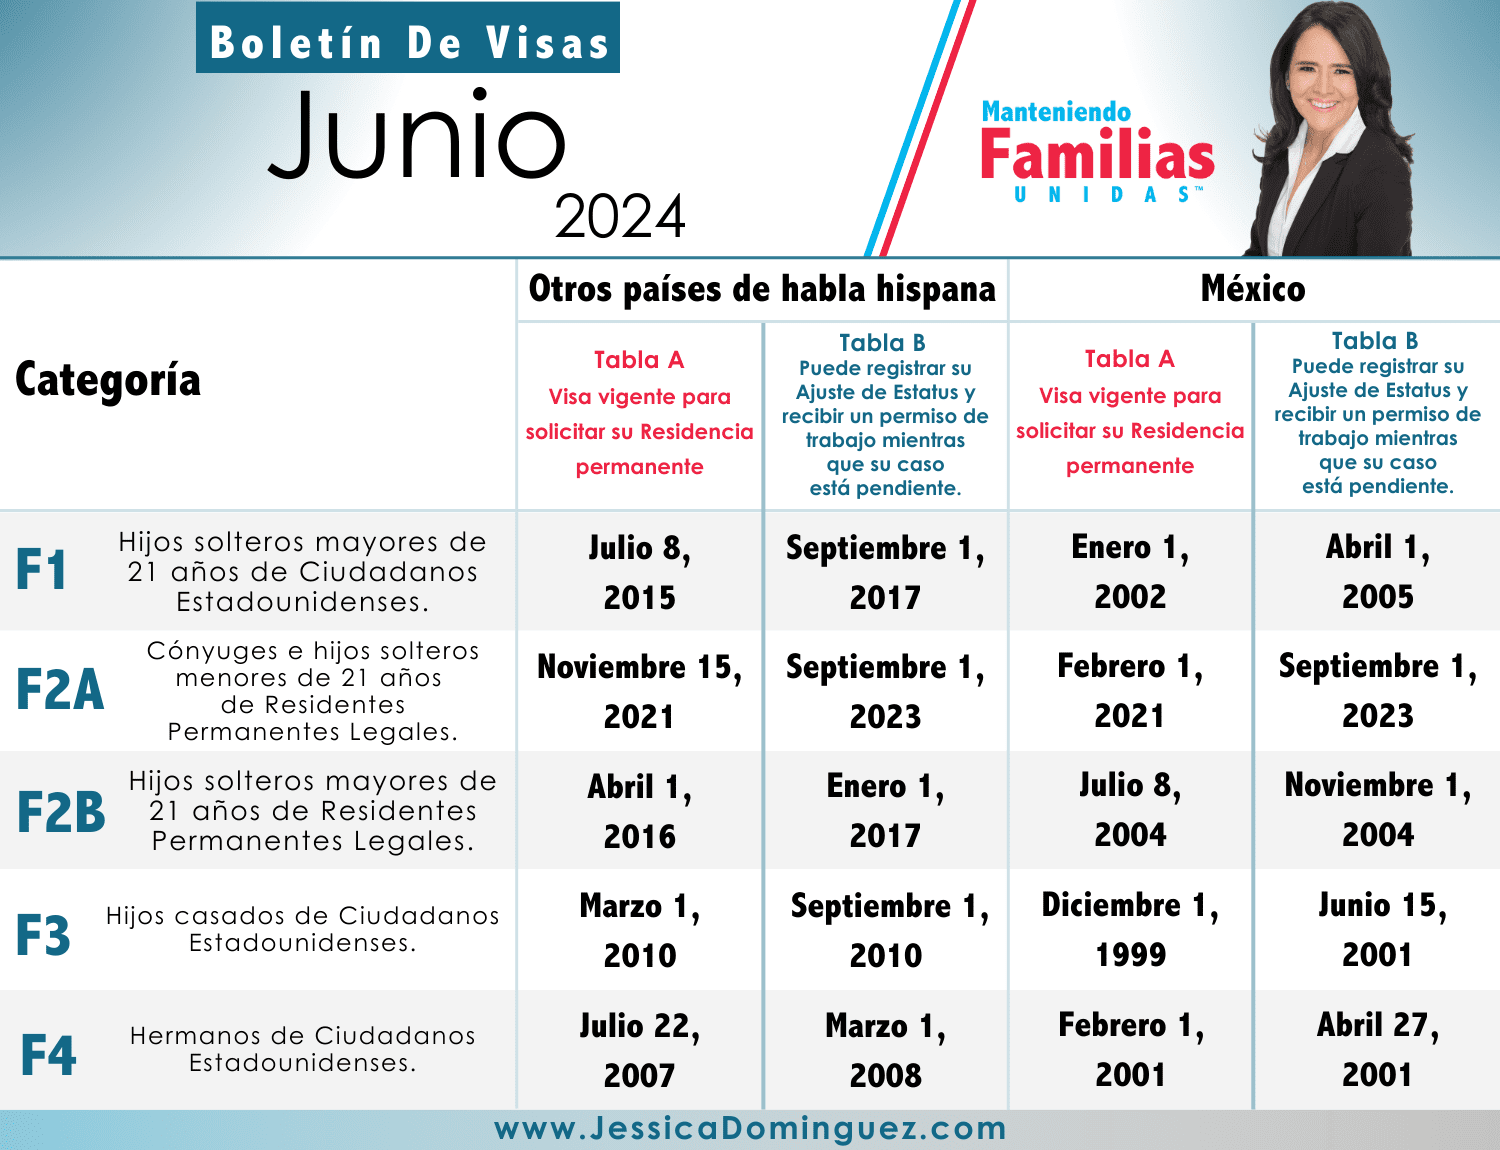 Boletín de Visas Junio 2024